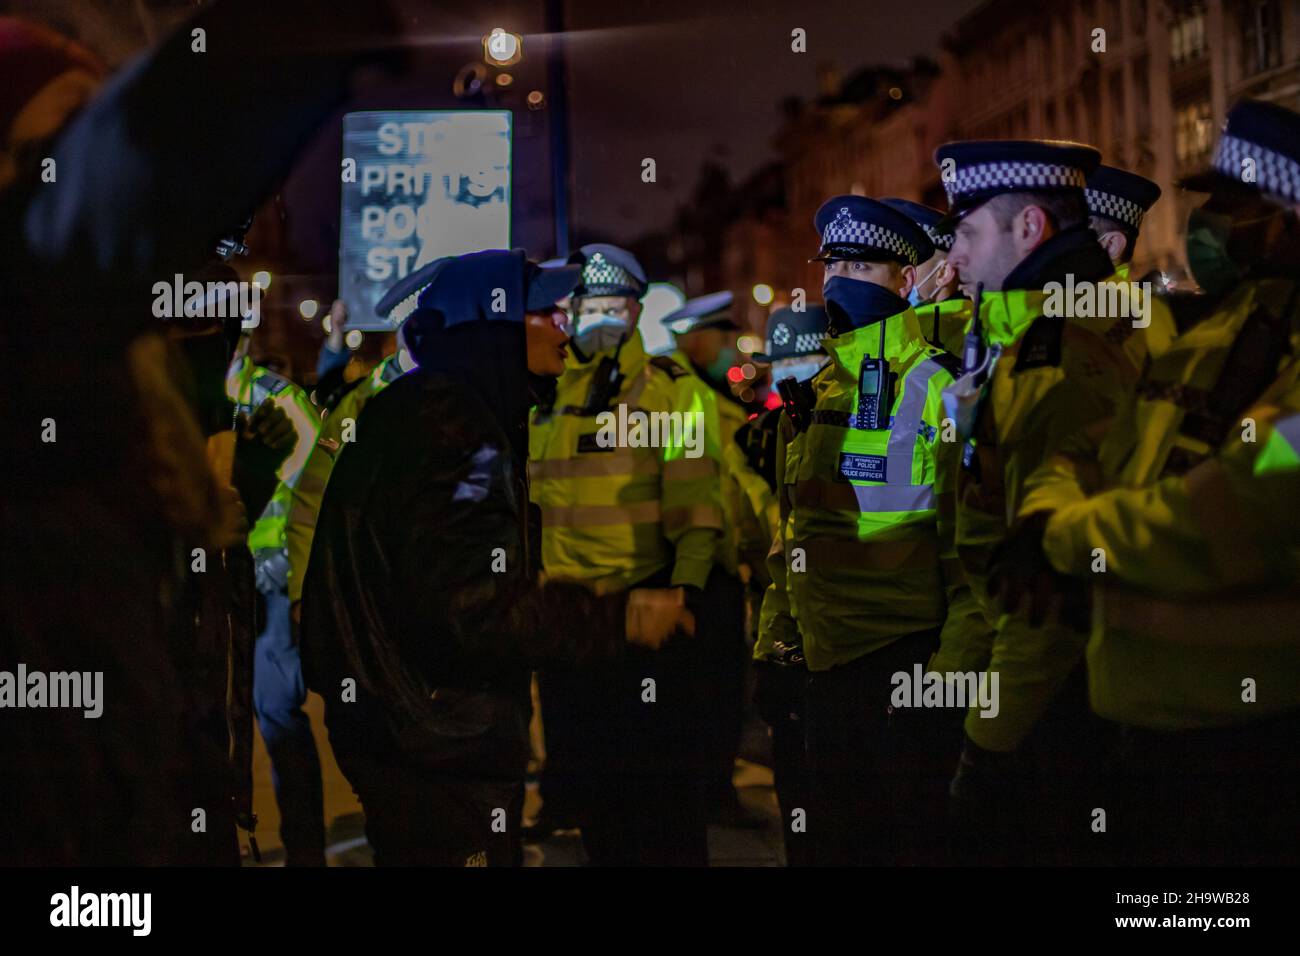 Londres, Inglaterra, Reino Unido 8th de diciembre de 2021 Cientos de manifestantes se reúnen en Parliament Square en oposición al proyecto de ley sobre la policía, el delito, las sentencias y los tribunales, con acalorados intercambios entre la policía y los manifestantes a medida que se acercaron las noches. Crédito: Denise Laura Baker/Alamy Live News Foto de stock